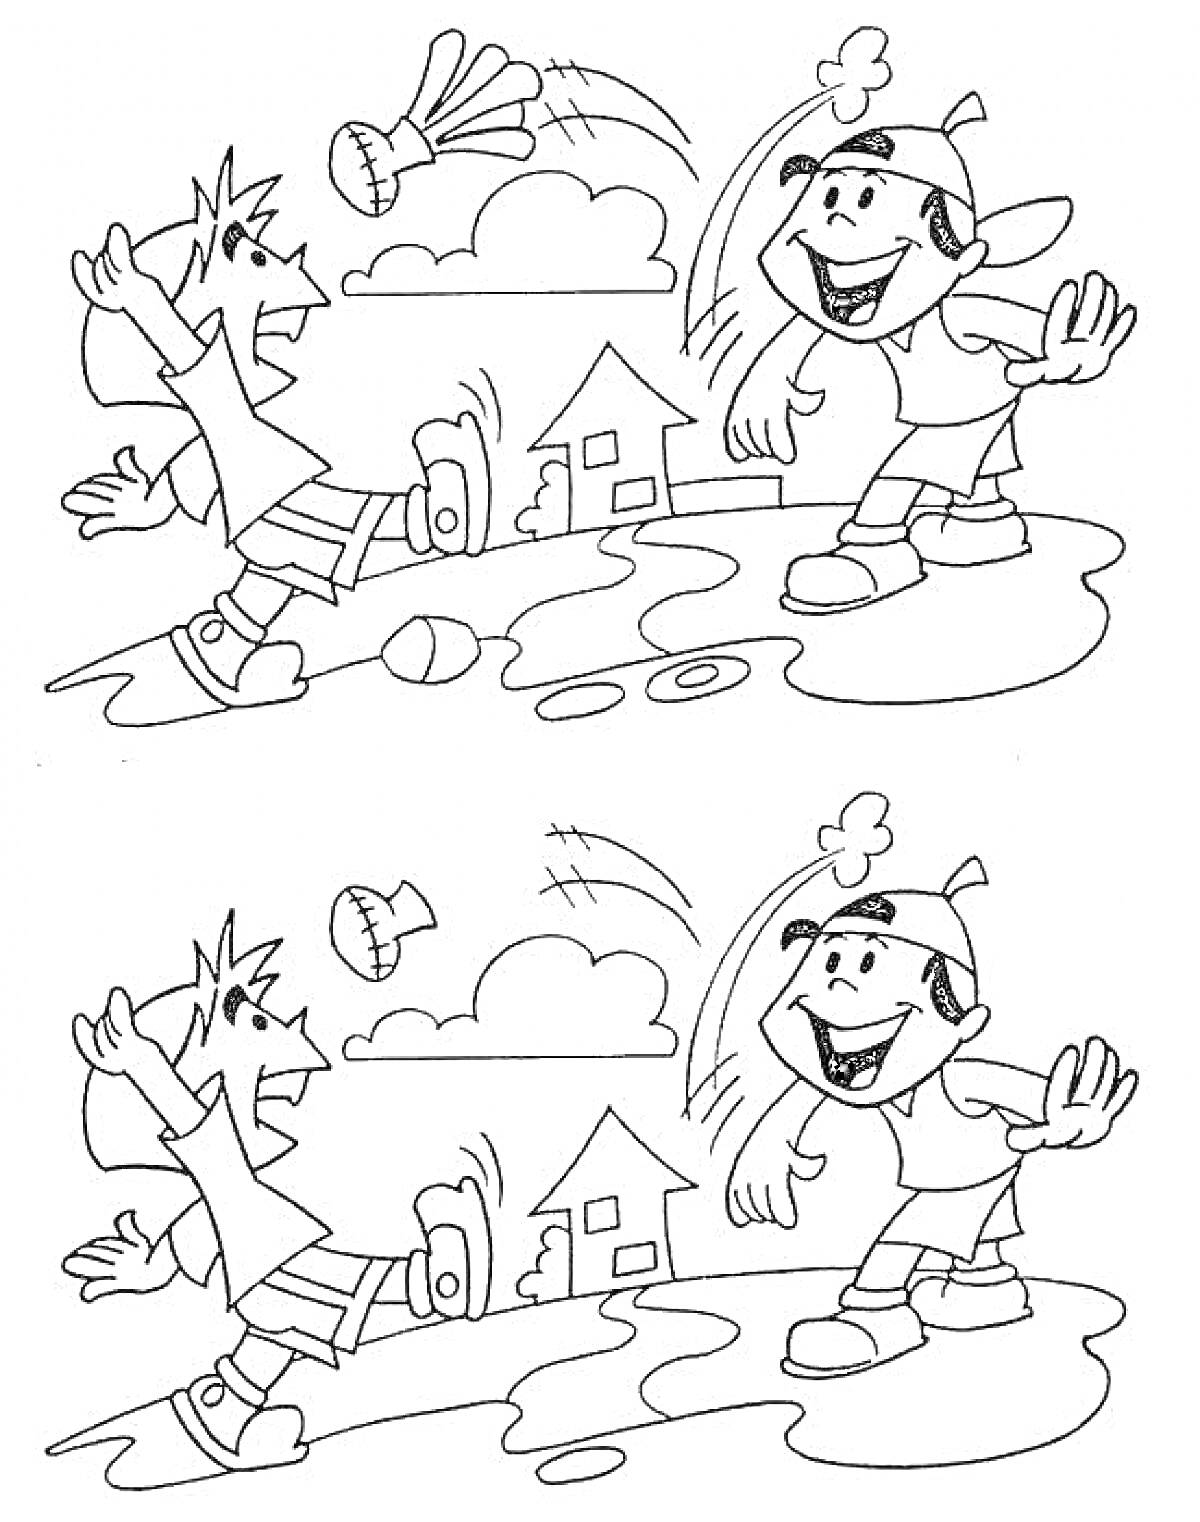 Раскраска Найди отличия. Дети играют в бадминтон на поляне с домиком и деревом